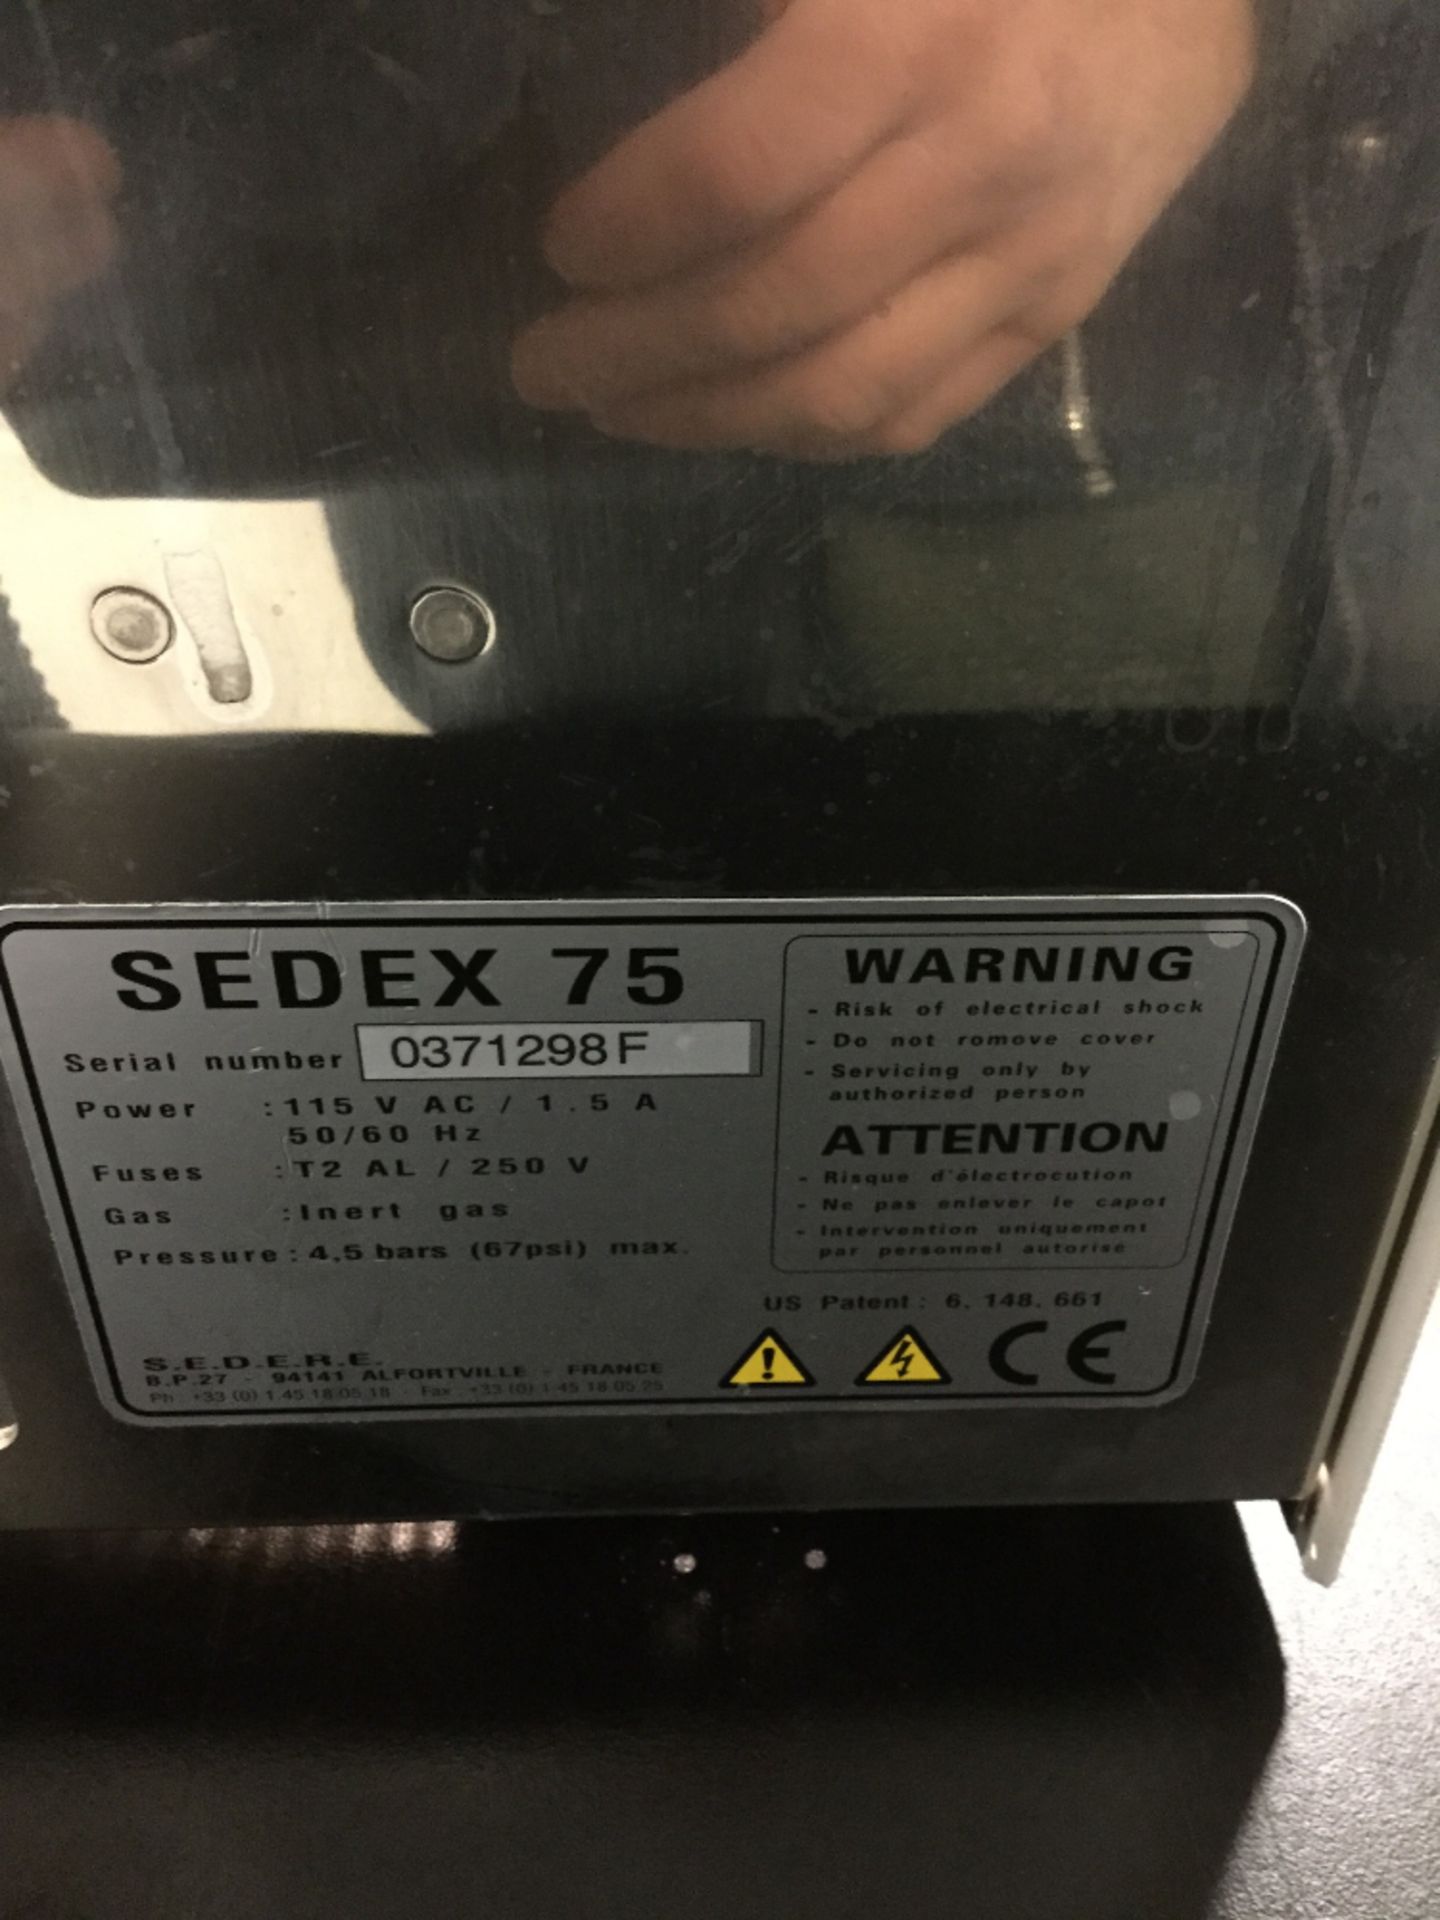 S.E.D.E.R.E. Sedex 75 ELS Detector - Image 2 of 3